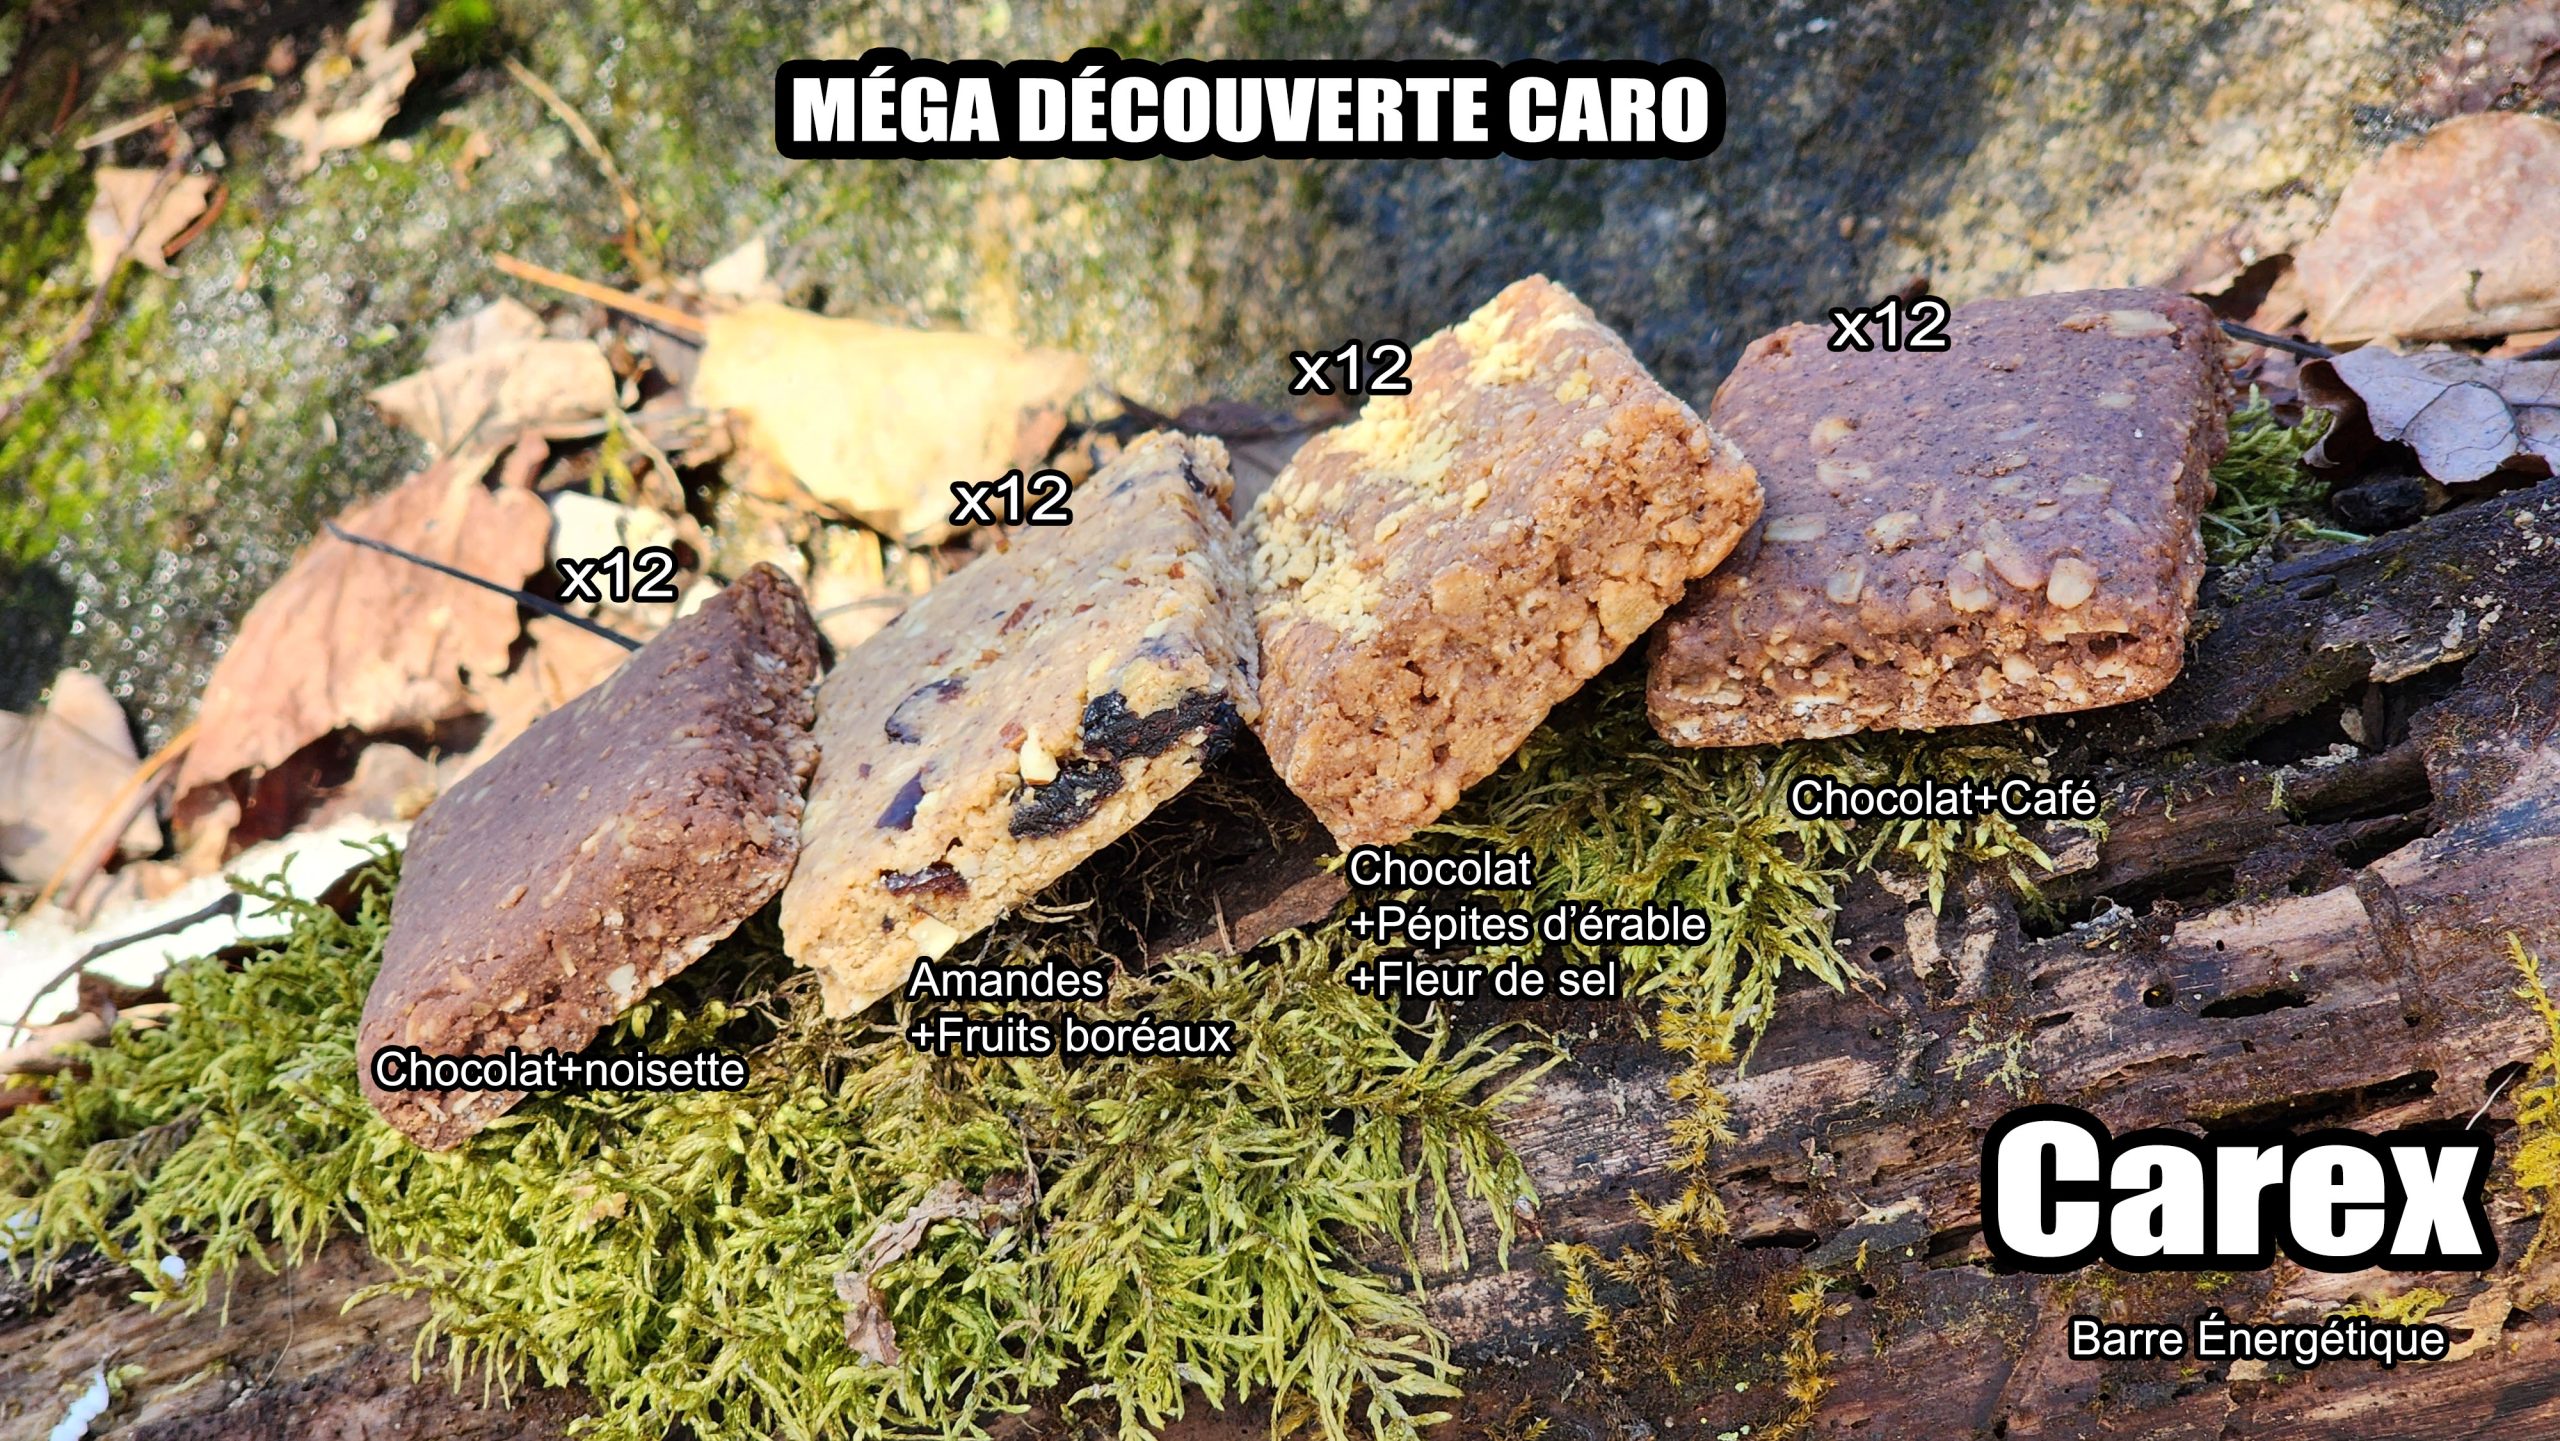 #1000 Ensemble Méga Découverte CARO 48x Carex Barre Énergétique avec Promo